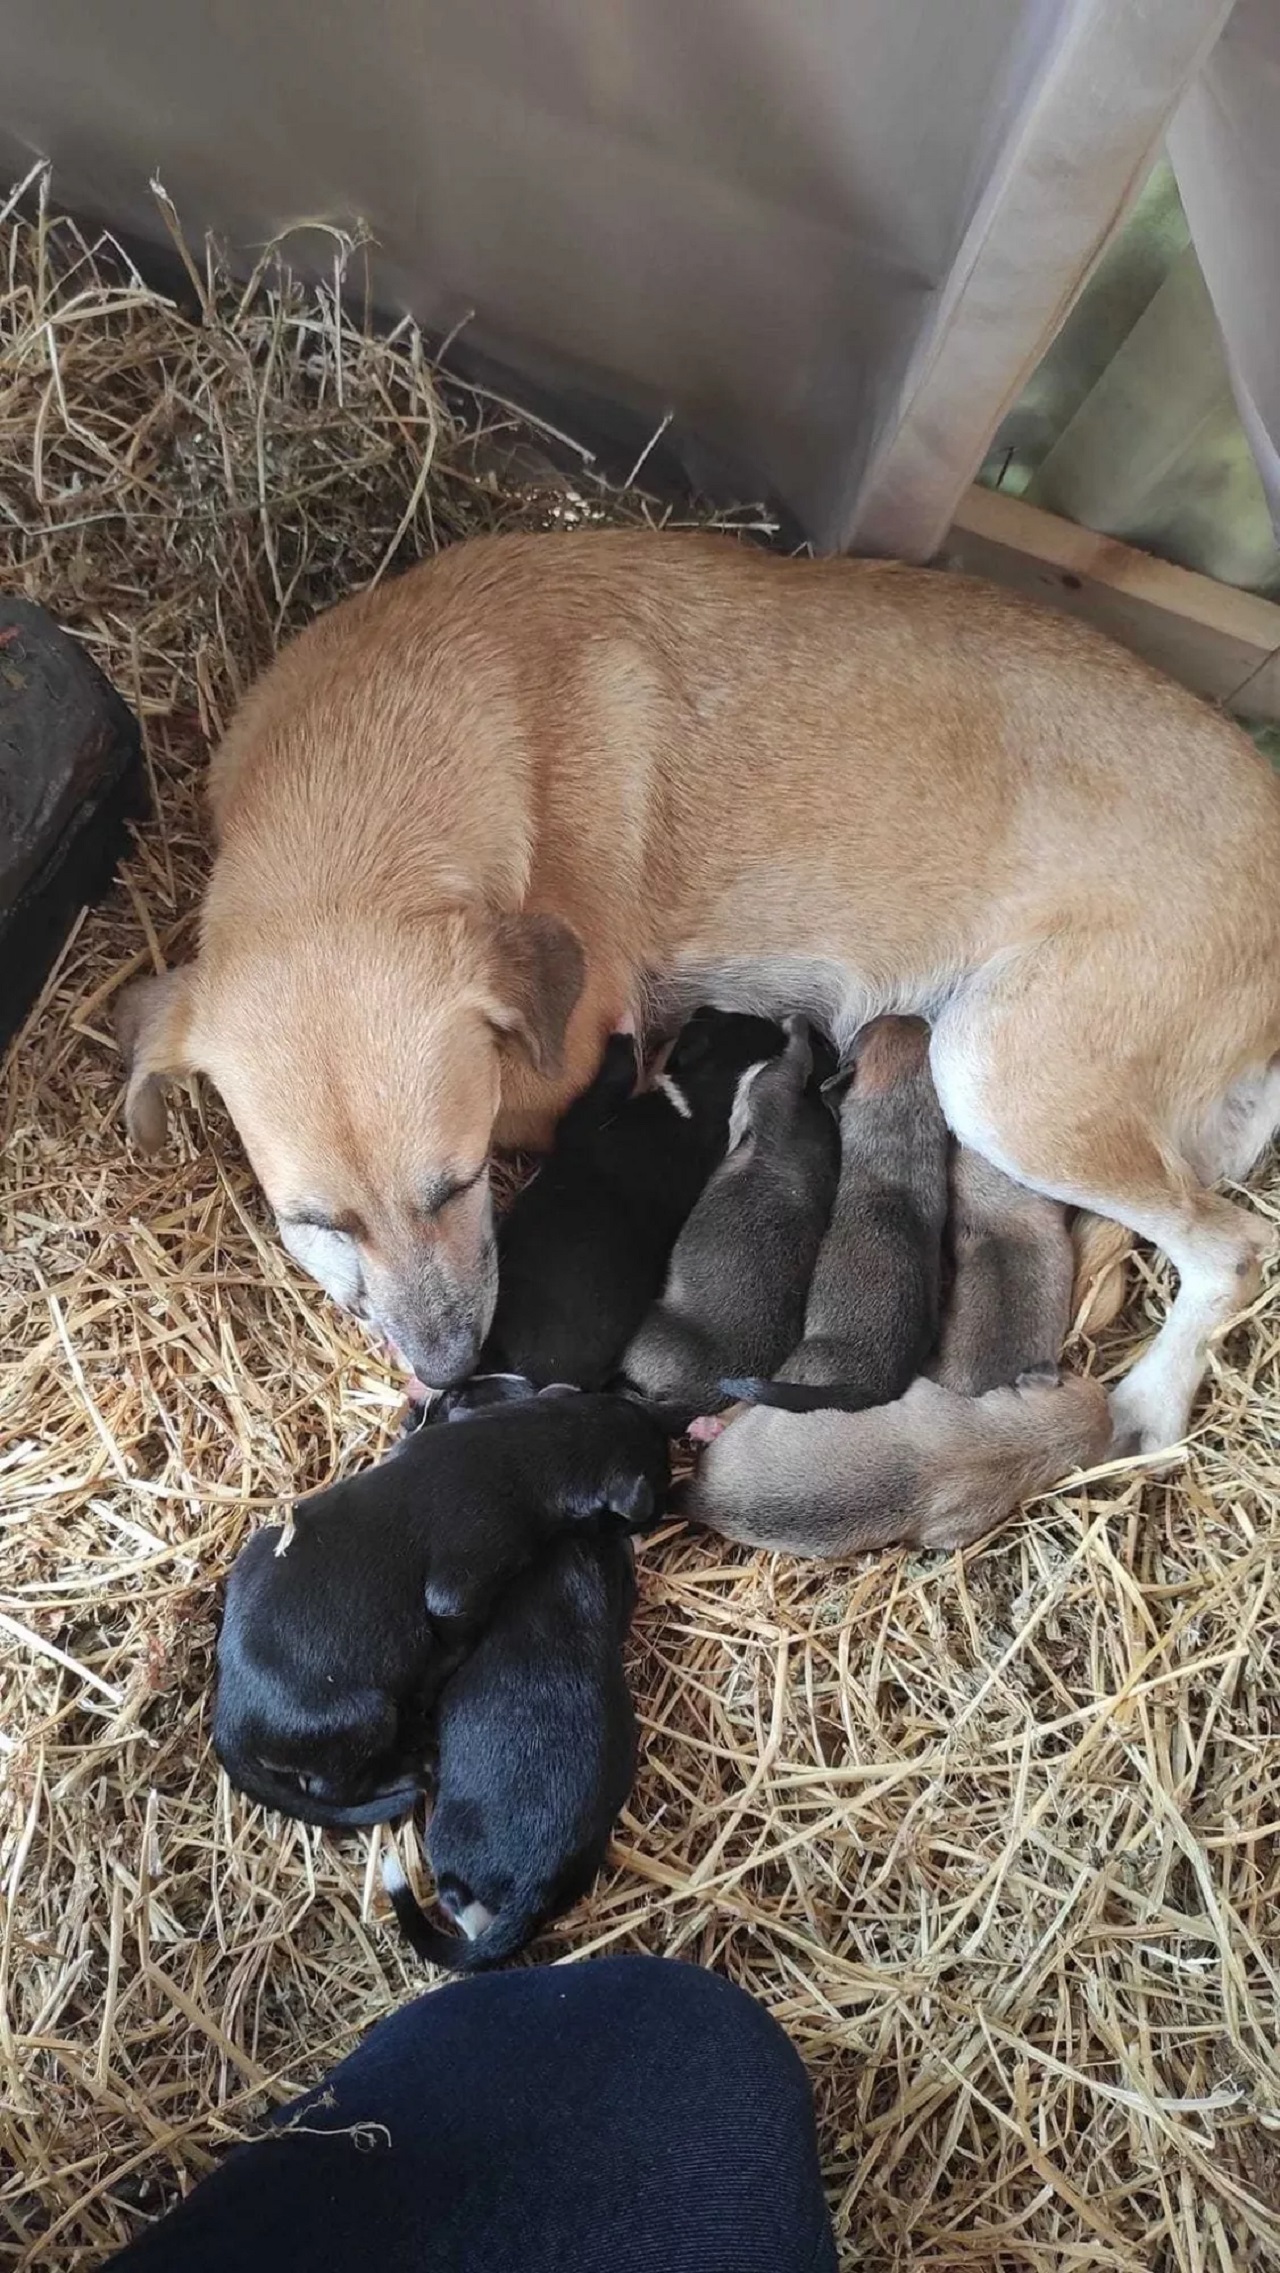 I cuccioli allattati dalla mamma